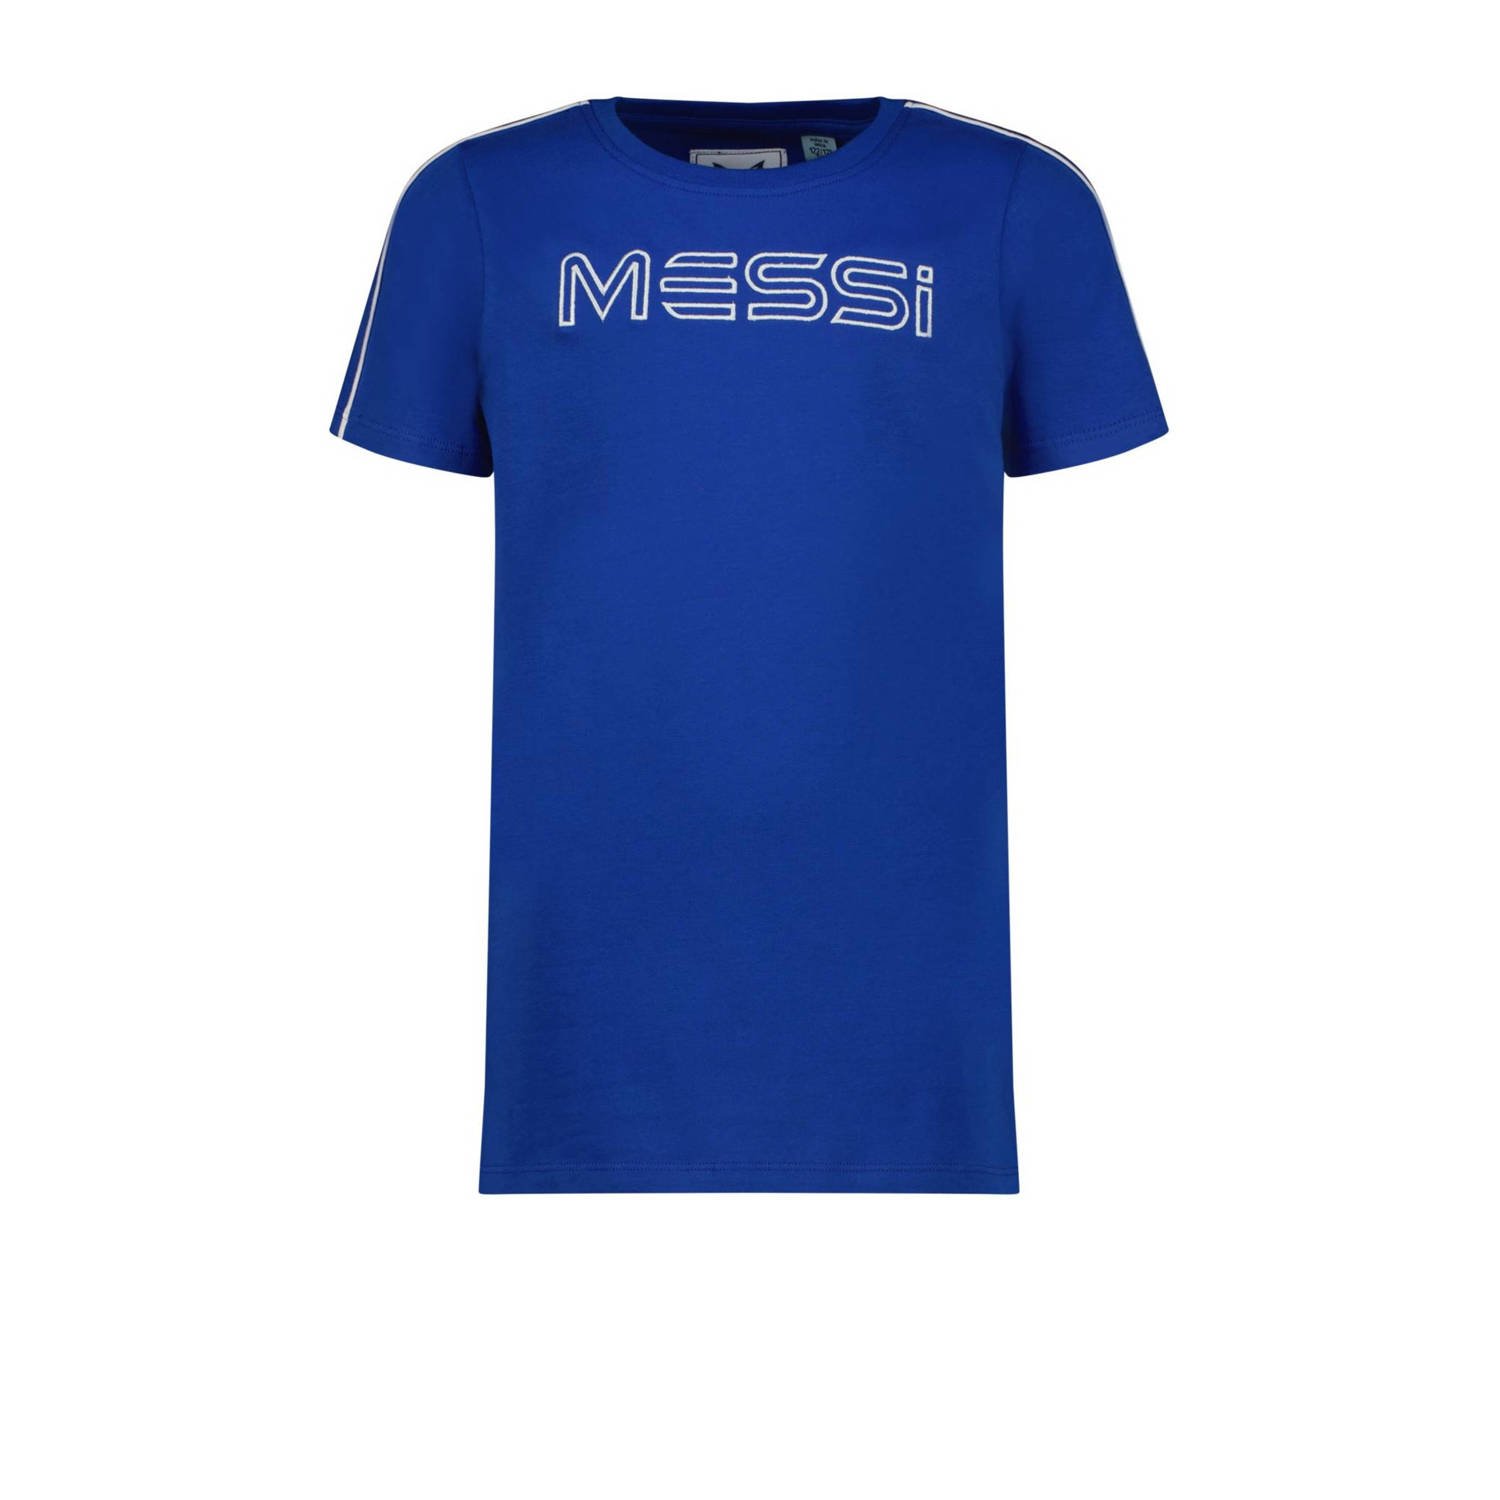 Vingino x Messi T-shirt Jaxe met logo hardblauw